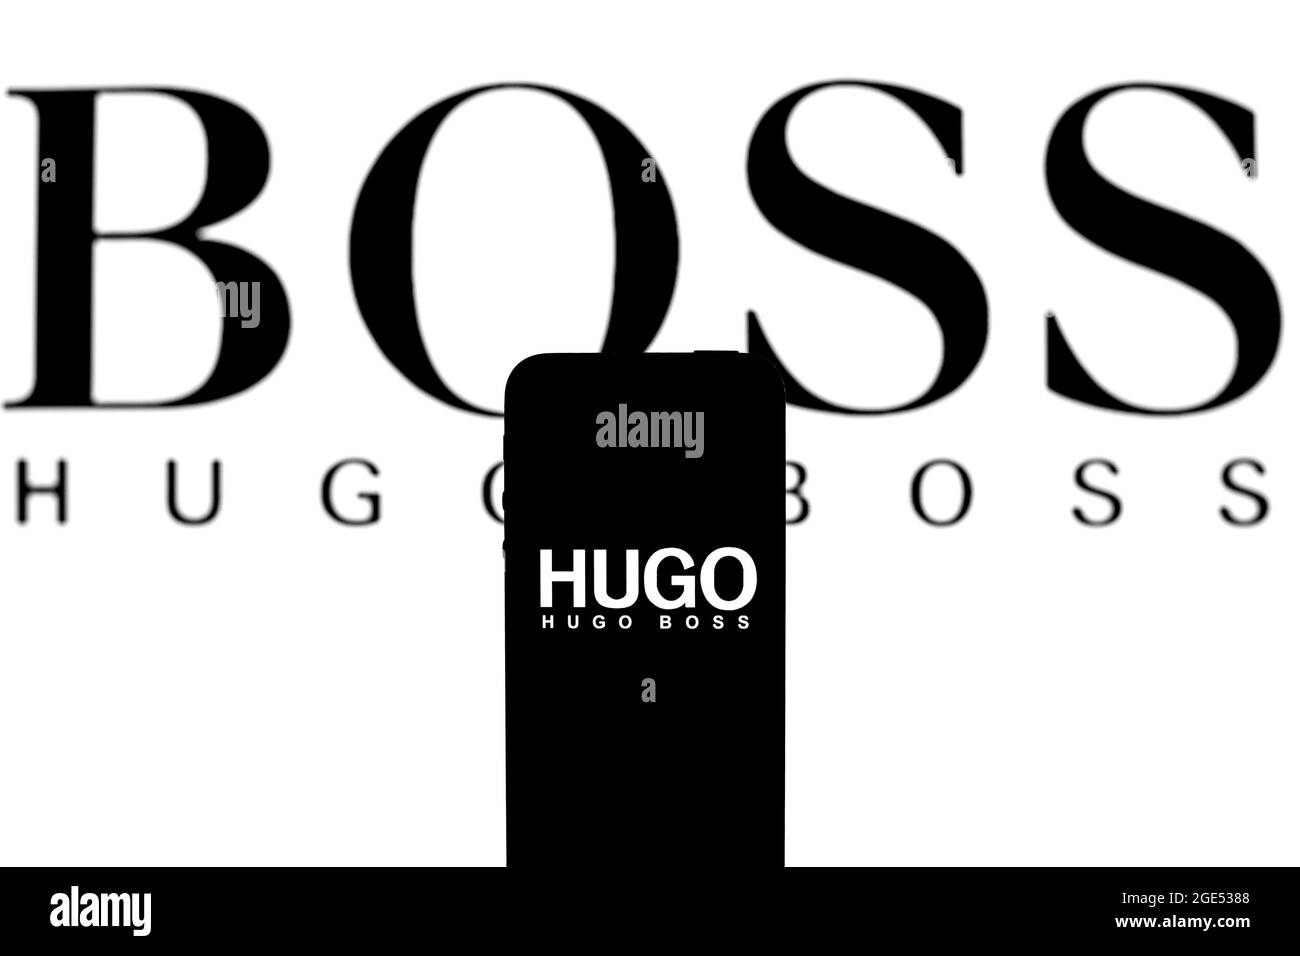 Hugo boss Banque d'images noir et blanc - Alamy